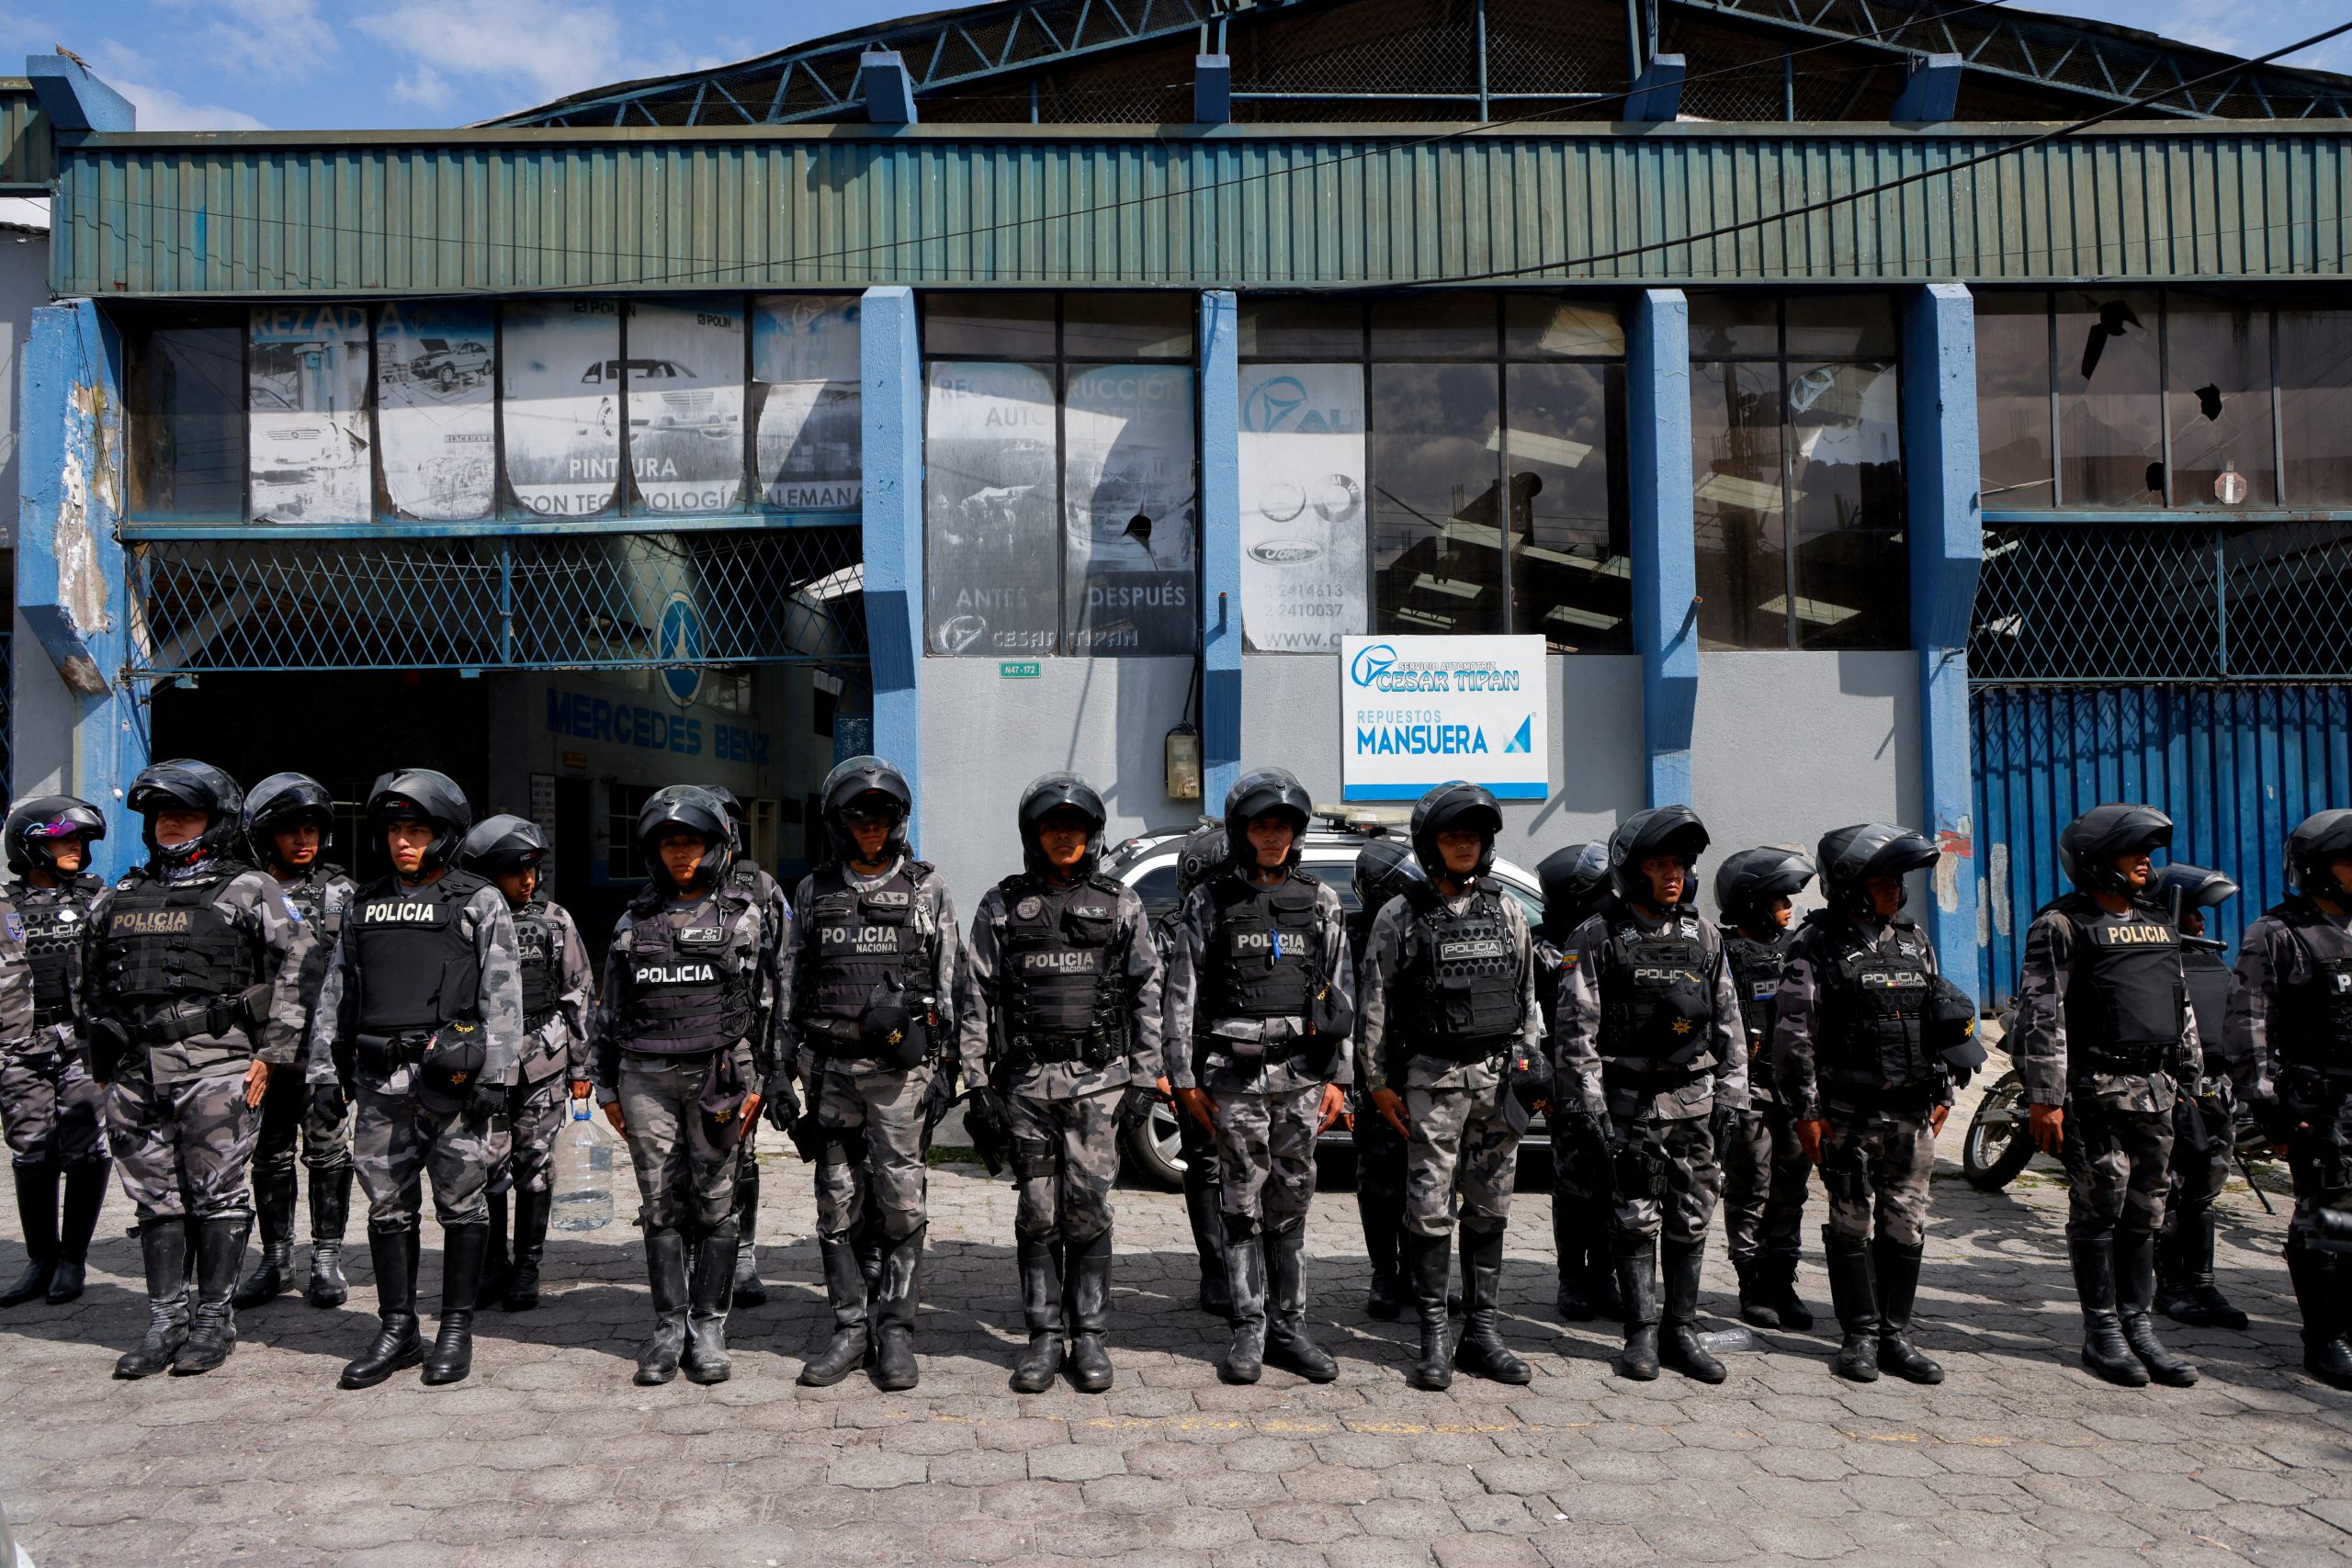  policiais sequestrados em estado de emergência no Equador 